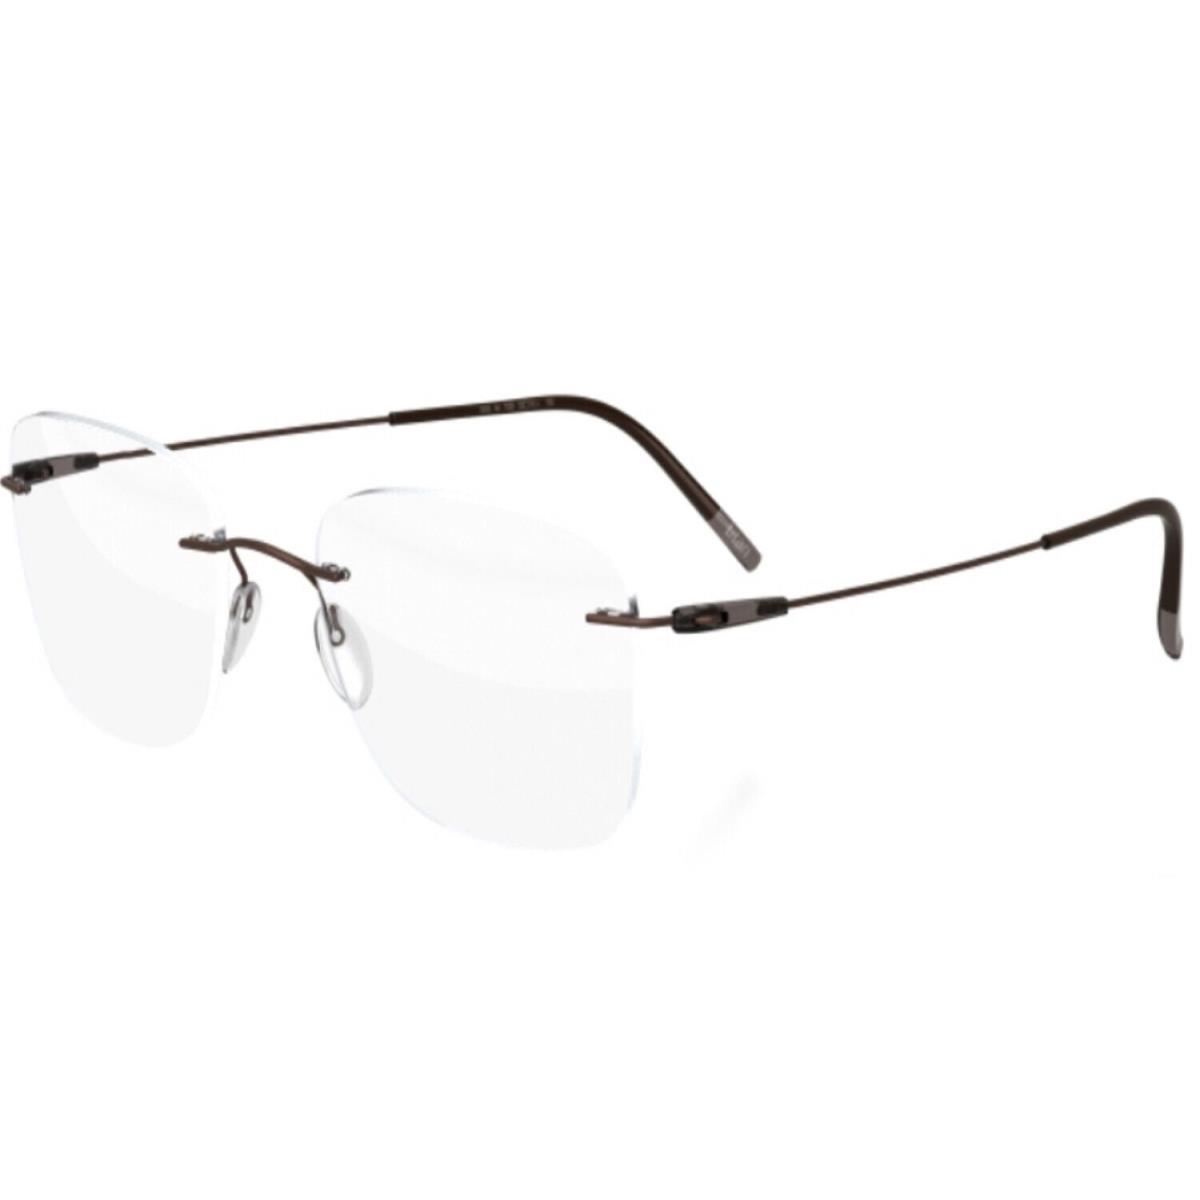 Silhouette Eyeglasses Dynamics Colorwave 57/19/145 Brown 5500/BF-6040-57MM